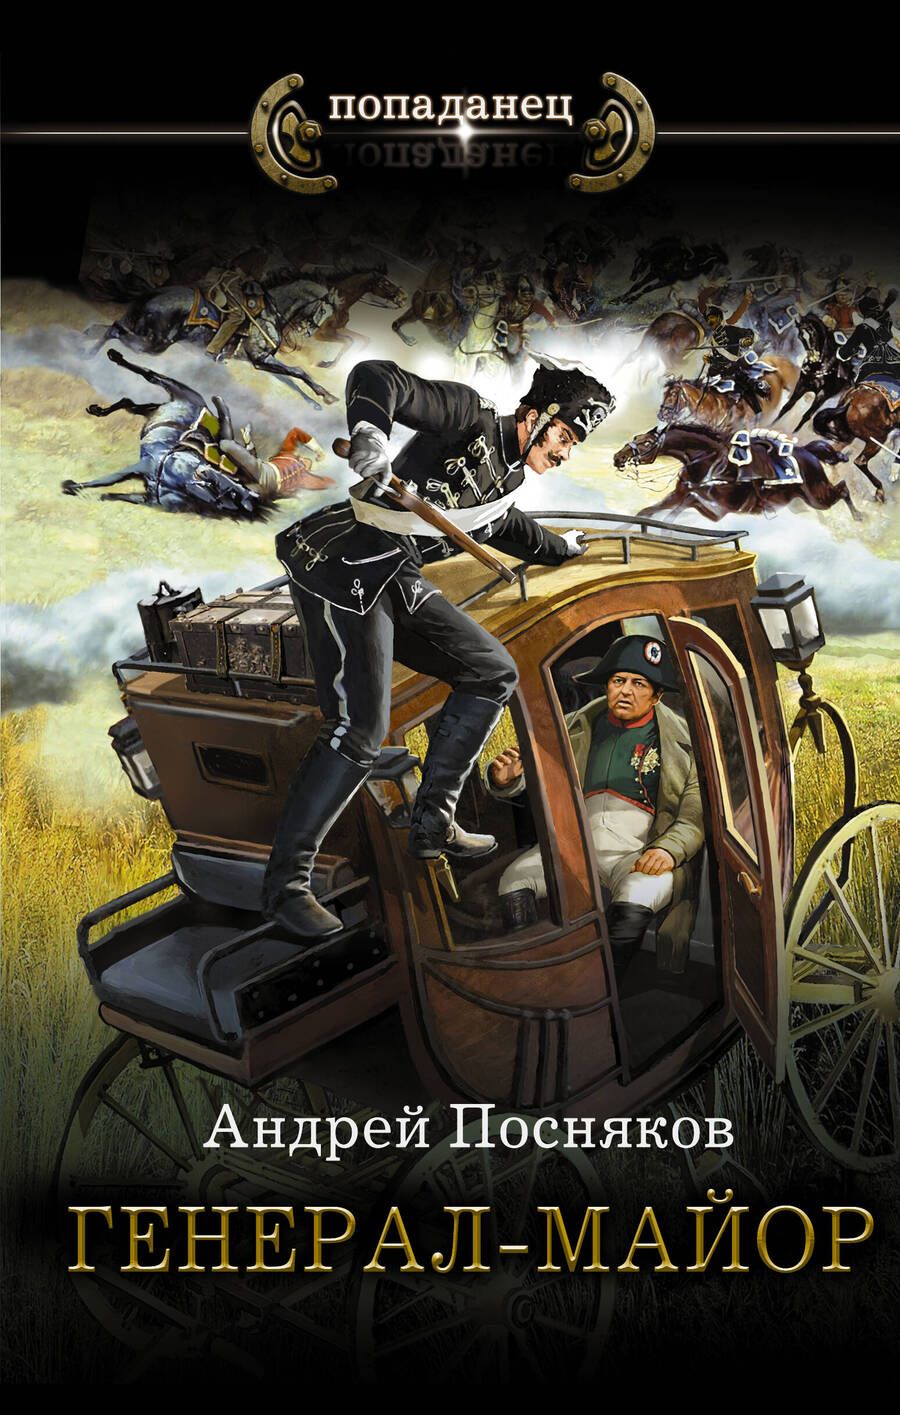 Обложка книги "Посняков: Генерал-майор"